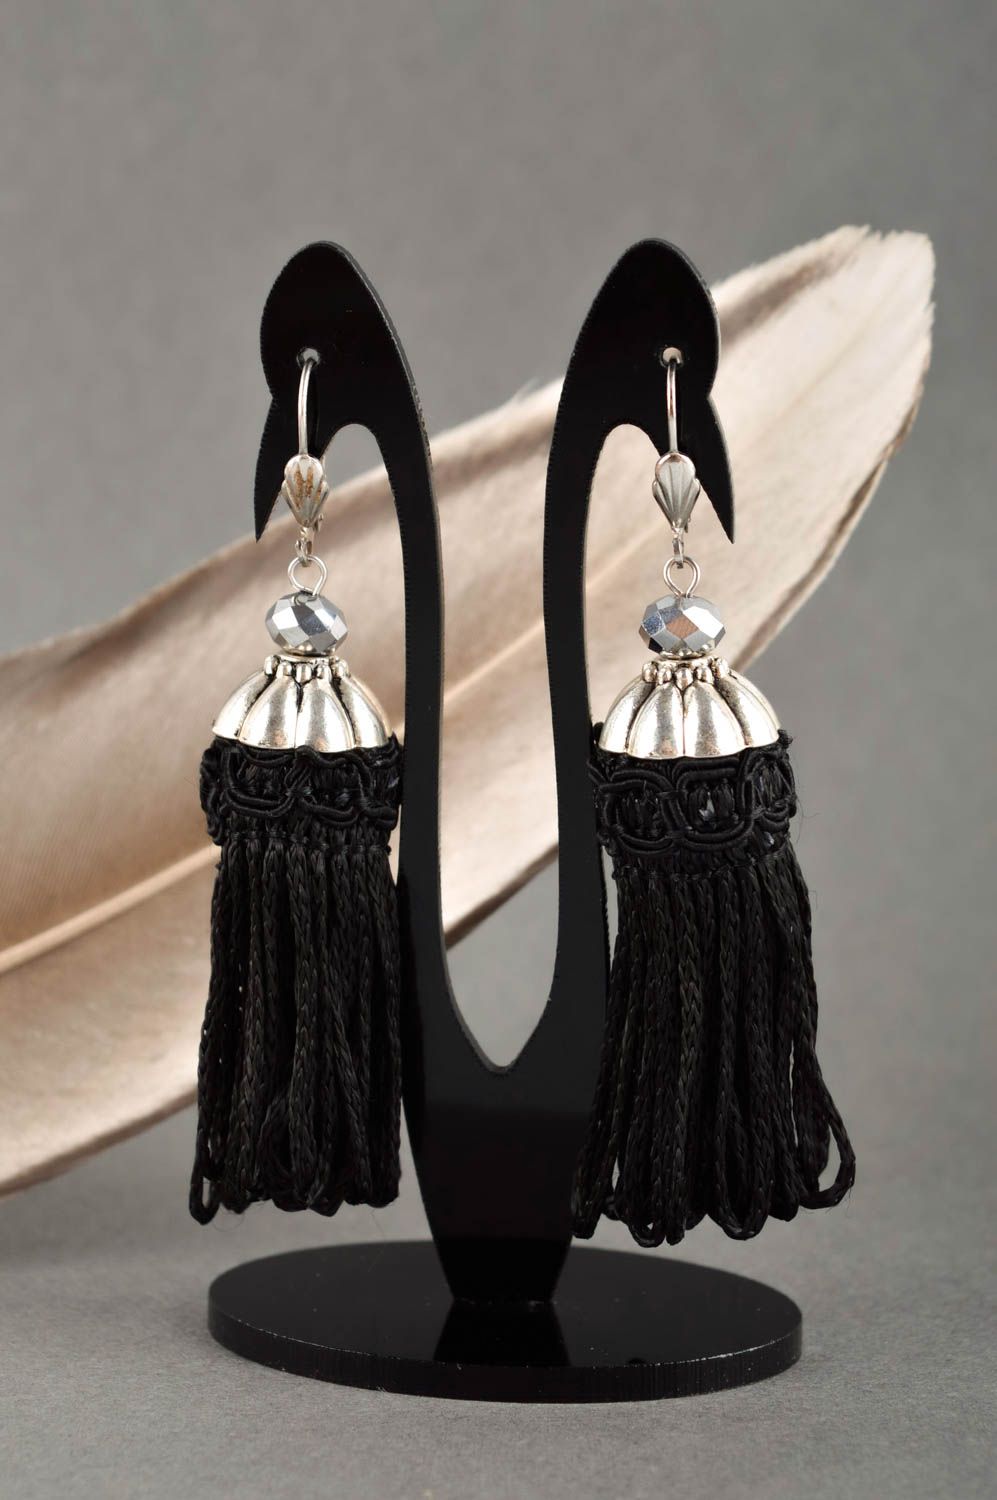 Handmade jewelry tassel earrings designer accessories long earrings gift for her photo 1